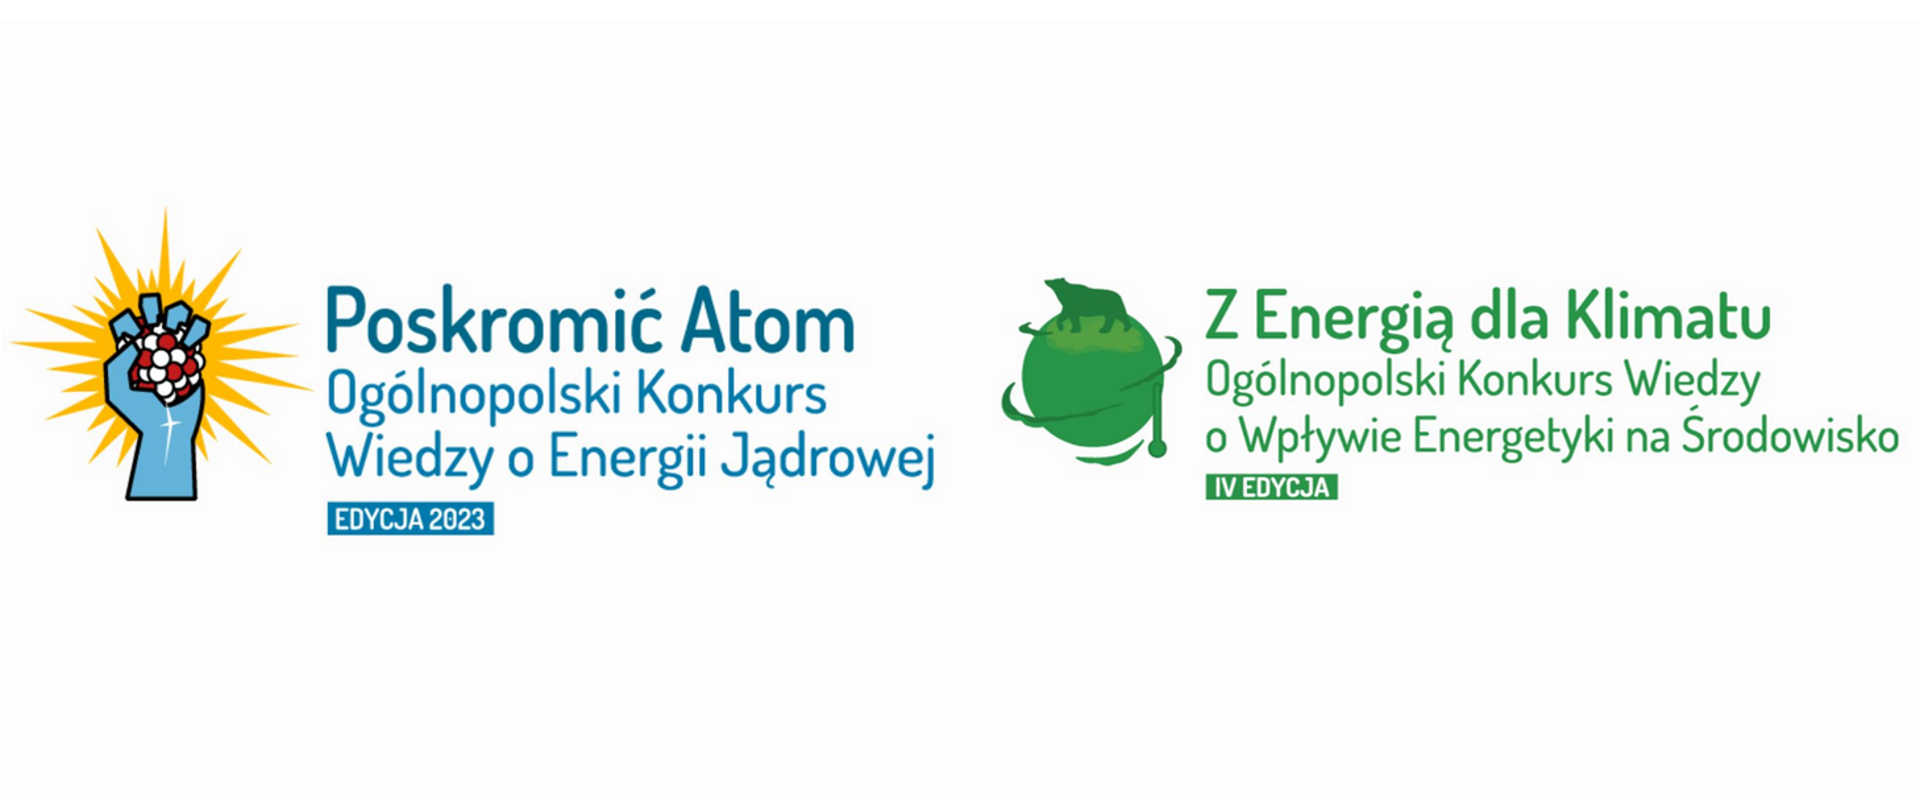 Konkursy dla uczniów „Poskromić Atom” i „Z Energią dla Klimatu” rozstrzygnięte